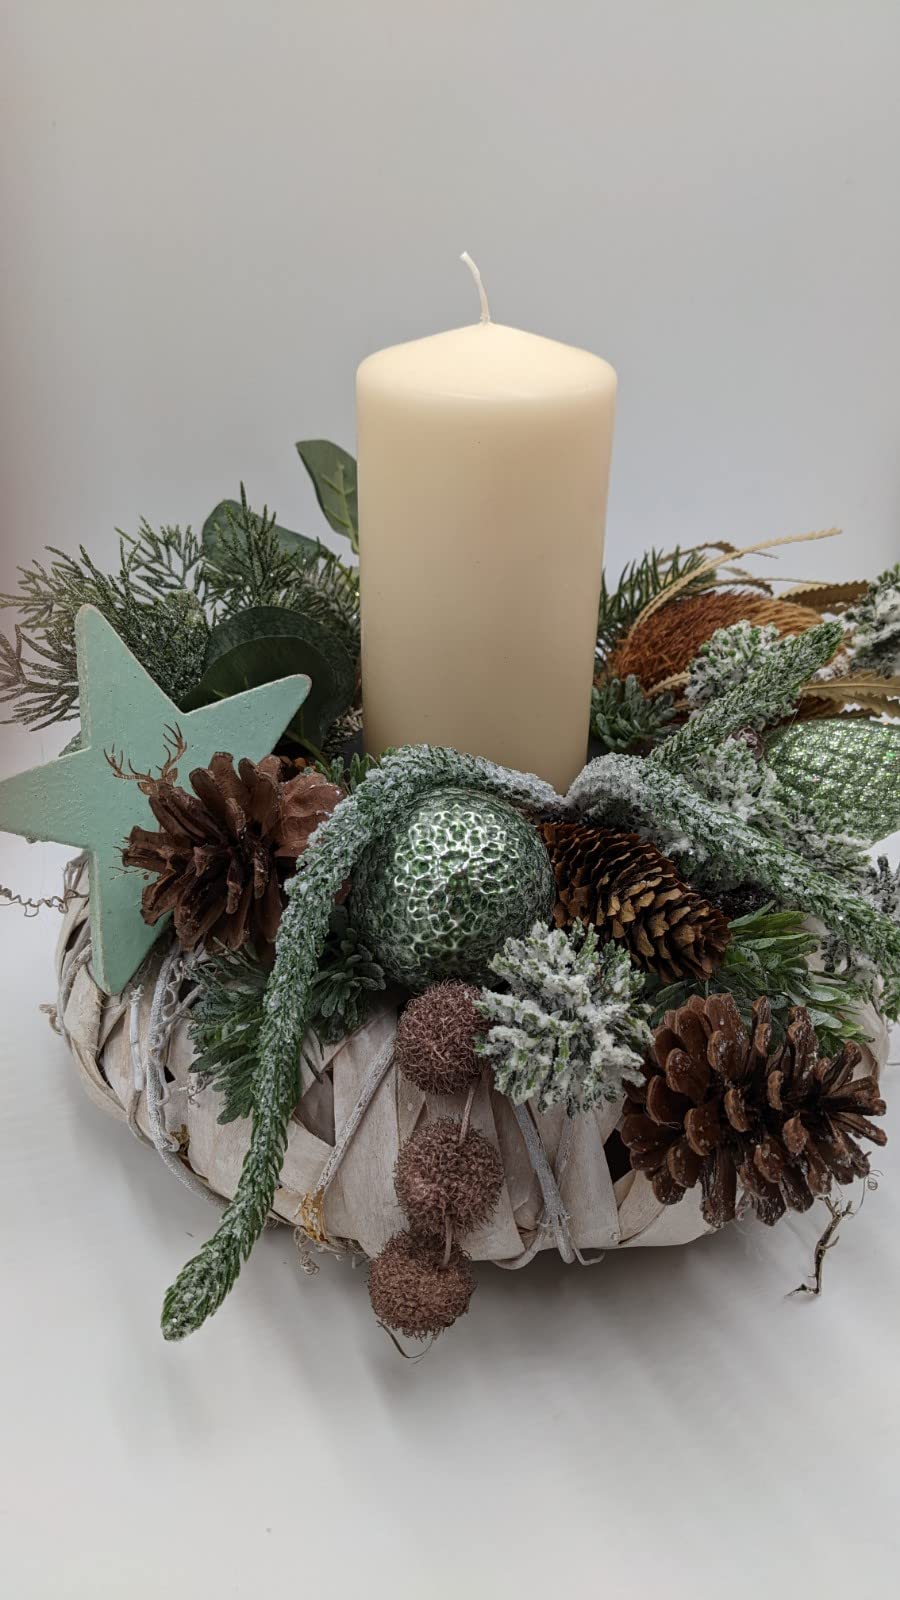 Weihnachtsgesteck Adventskranz Adventsgesteck Kugel Zapfen Stern Kerze Banksia Tanne creme mint